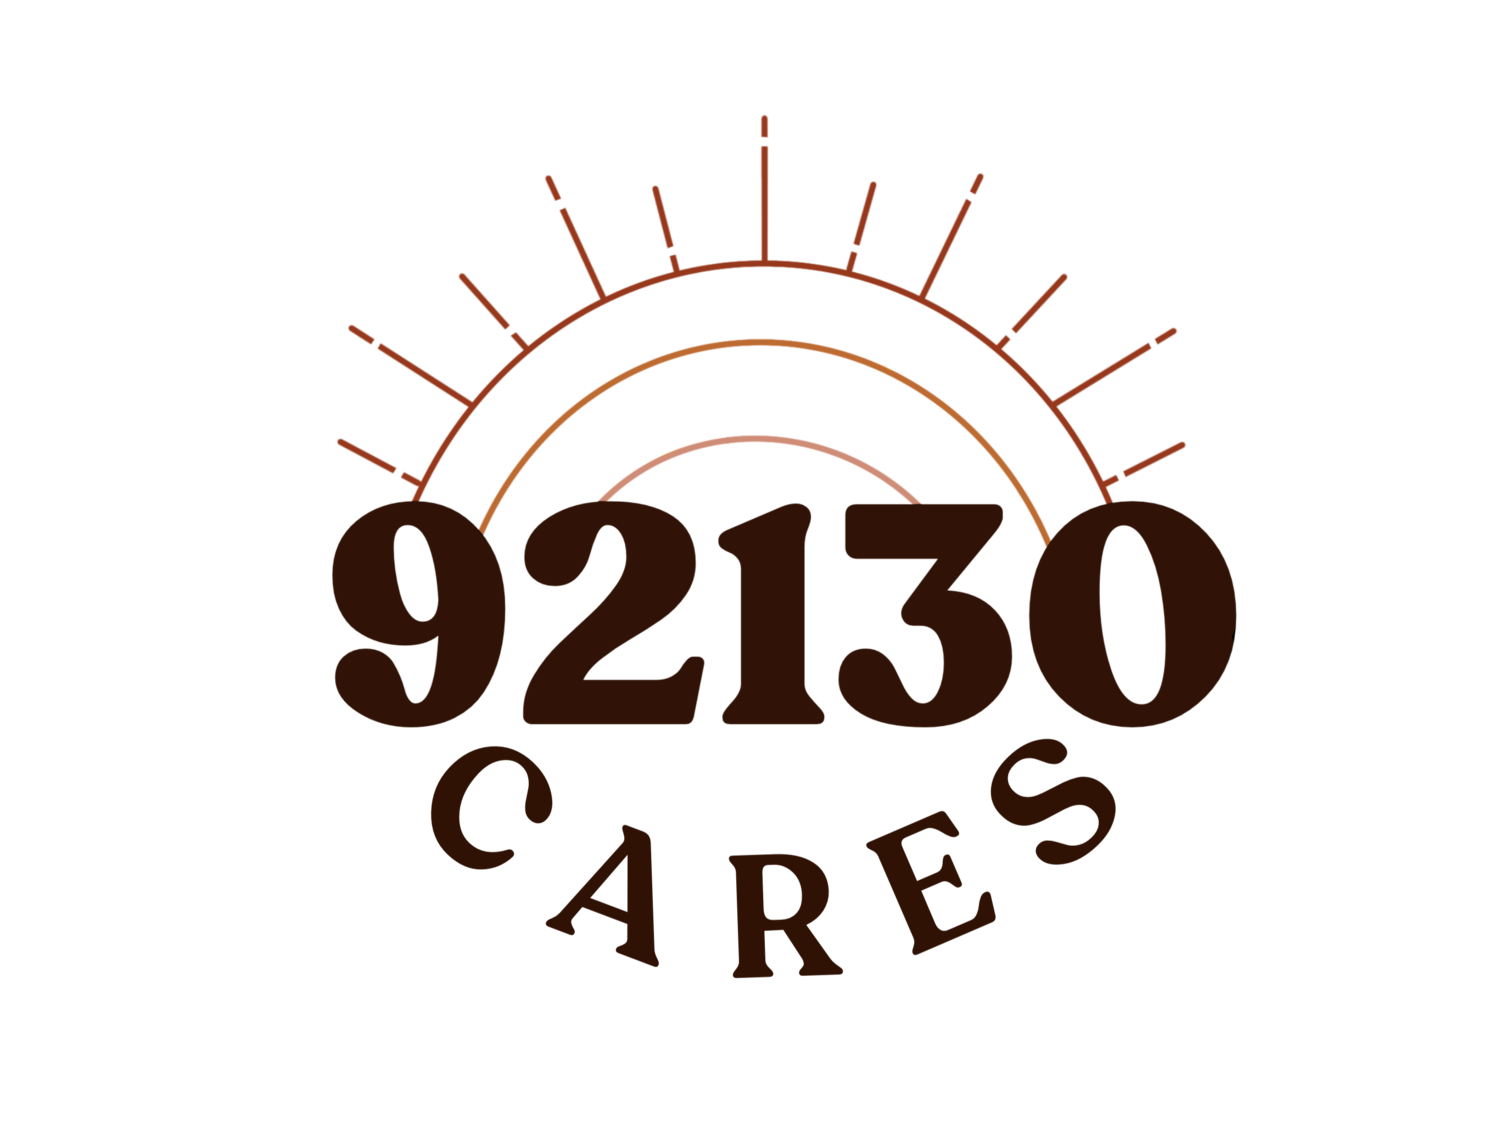 92130 Cares